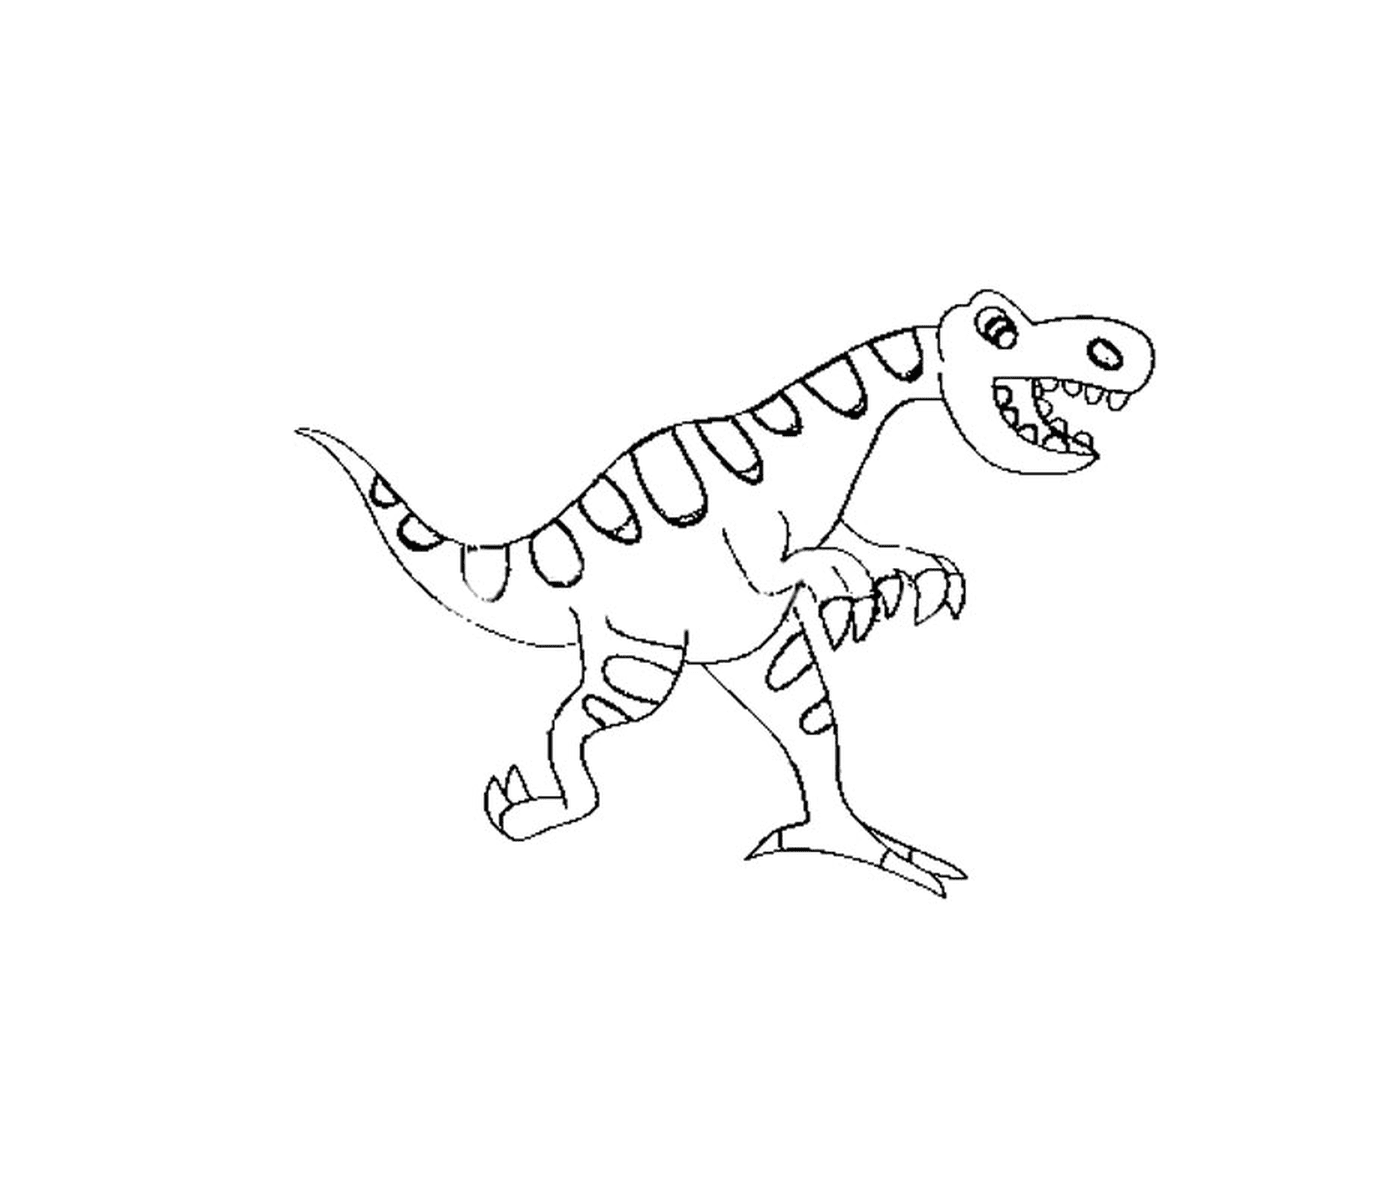  Little dinosaur from Jurassic Park, adorable smile 